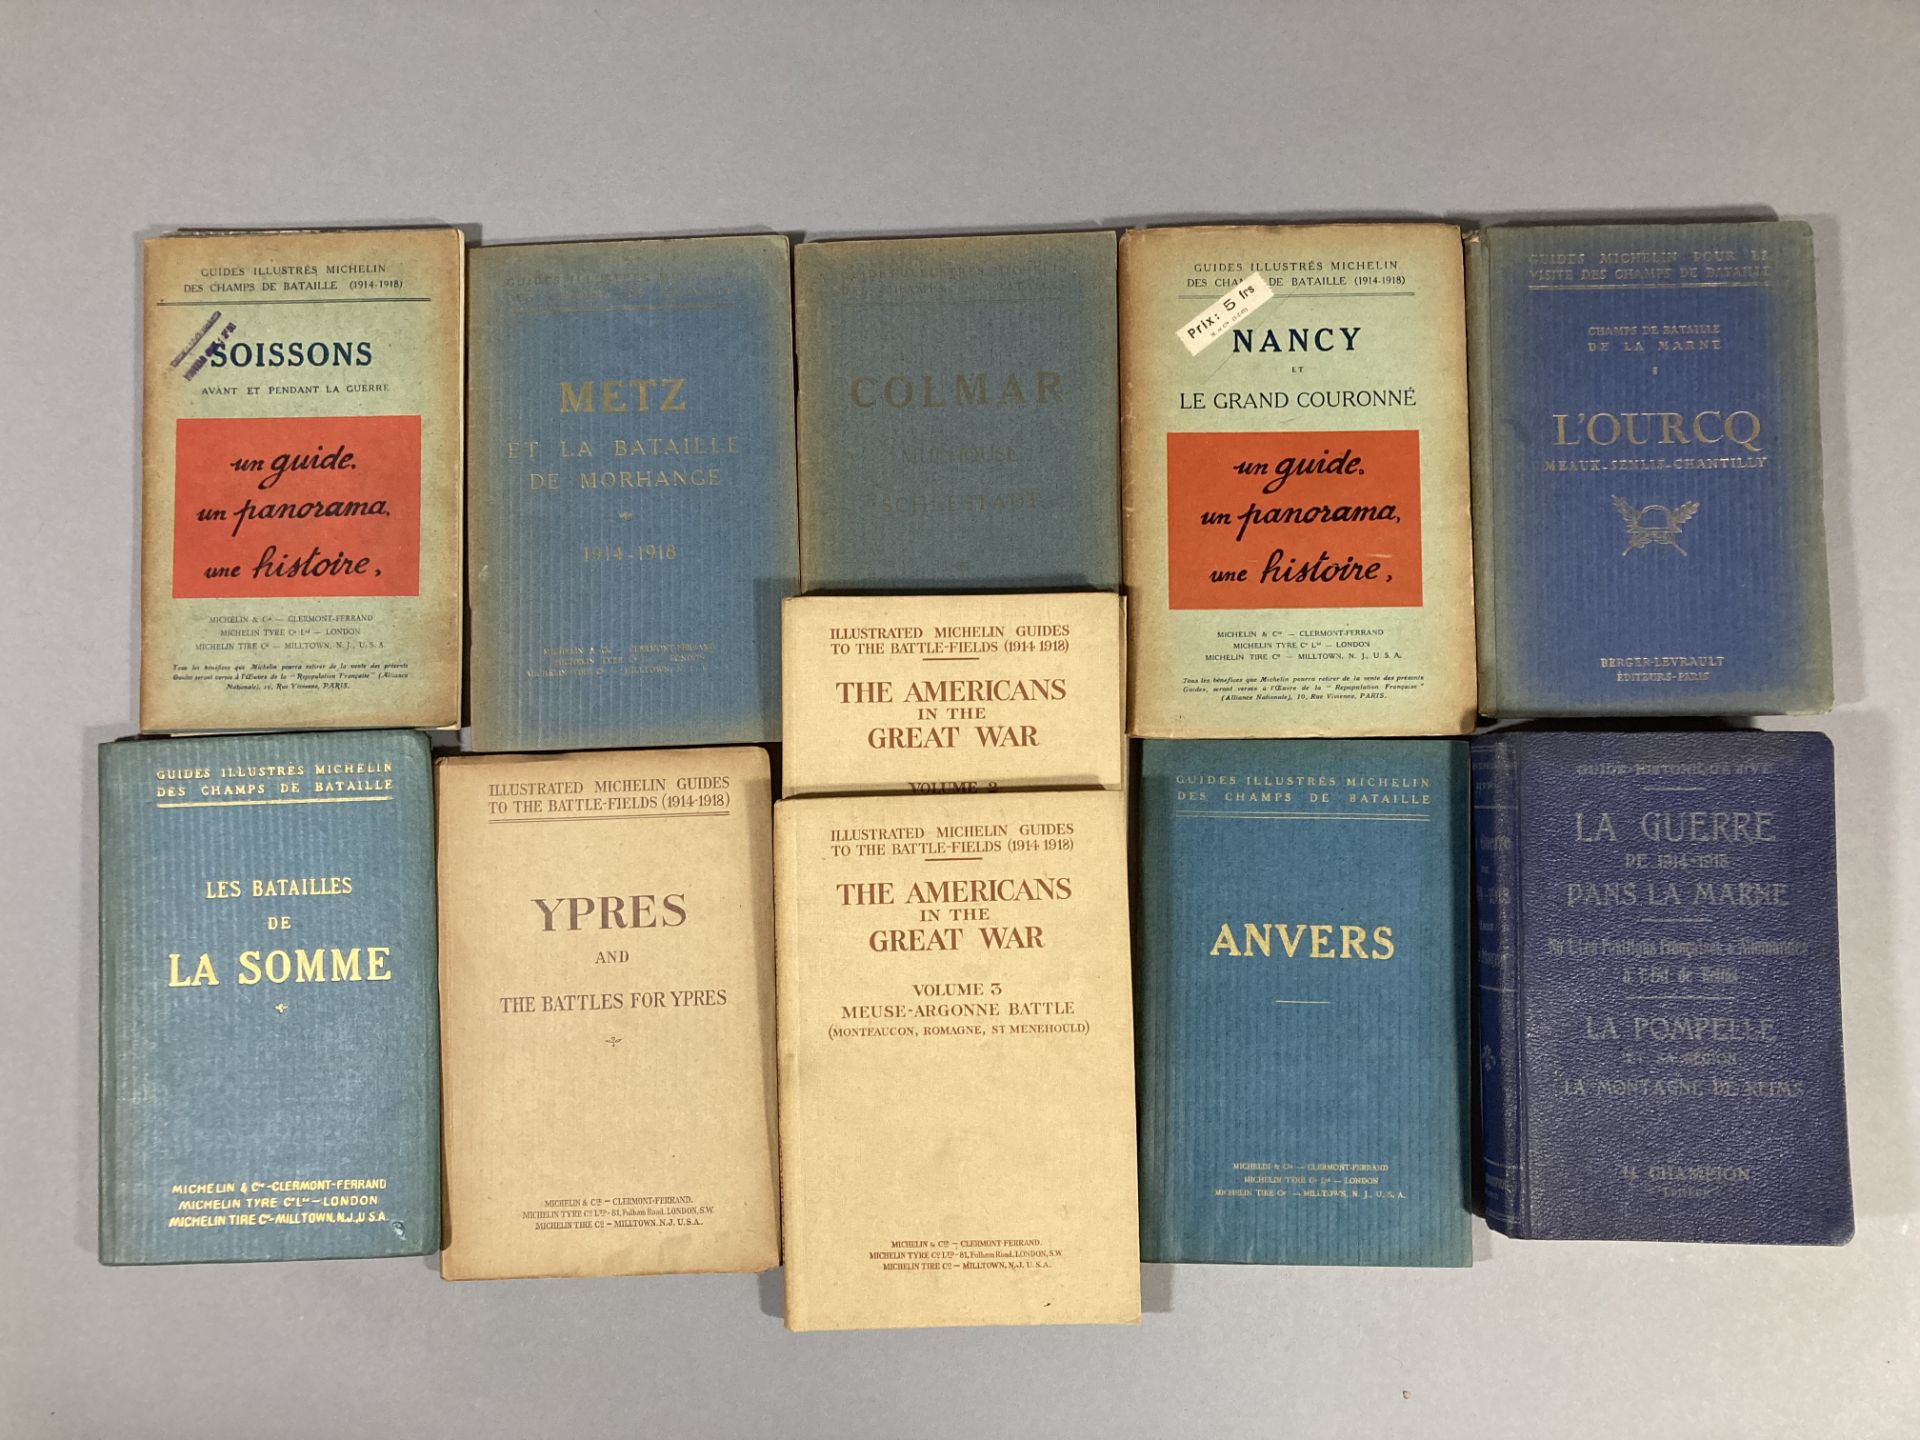 Guides illustrés MICHELIN des Champs de batailles : Soissons, La Somme, Nancy, Colmar, Metz, Anvers,